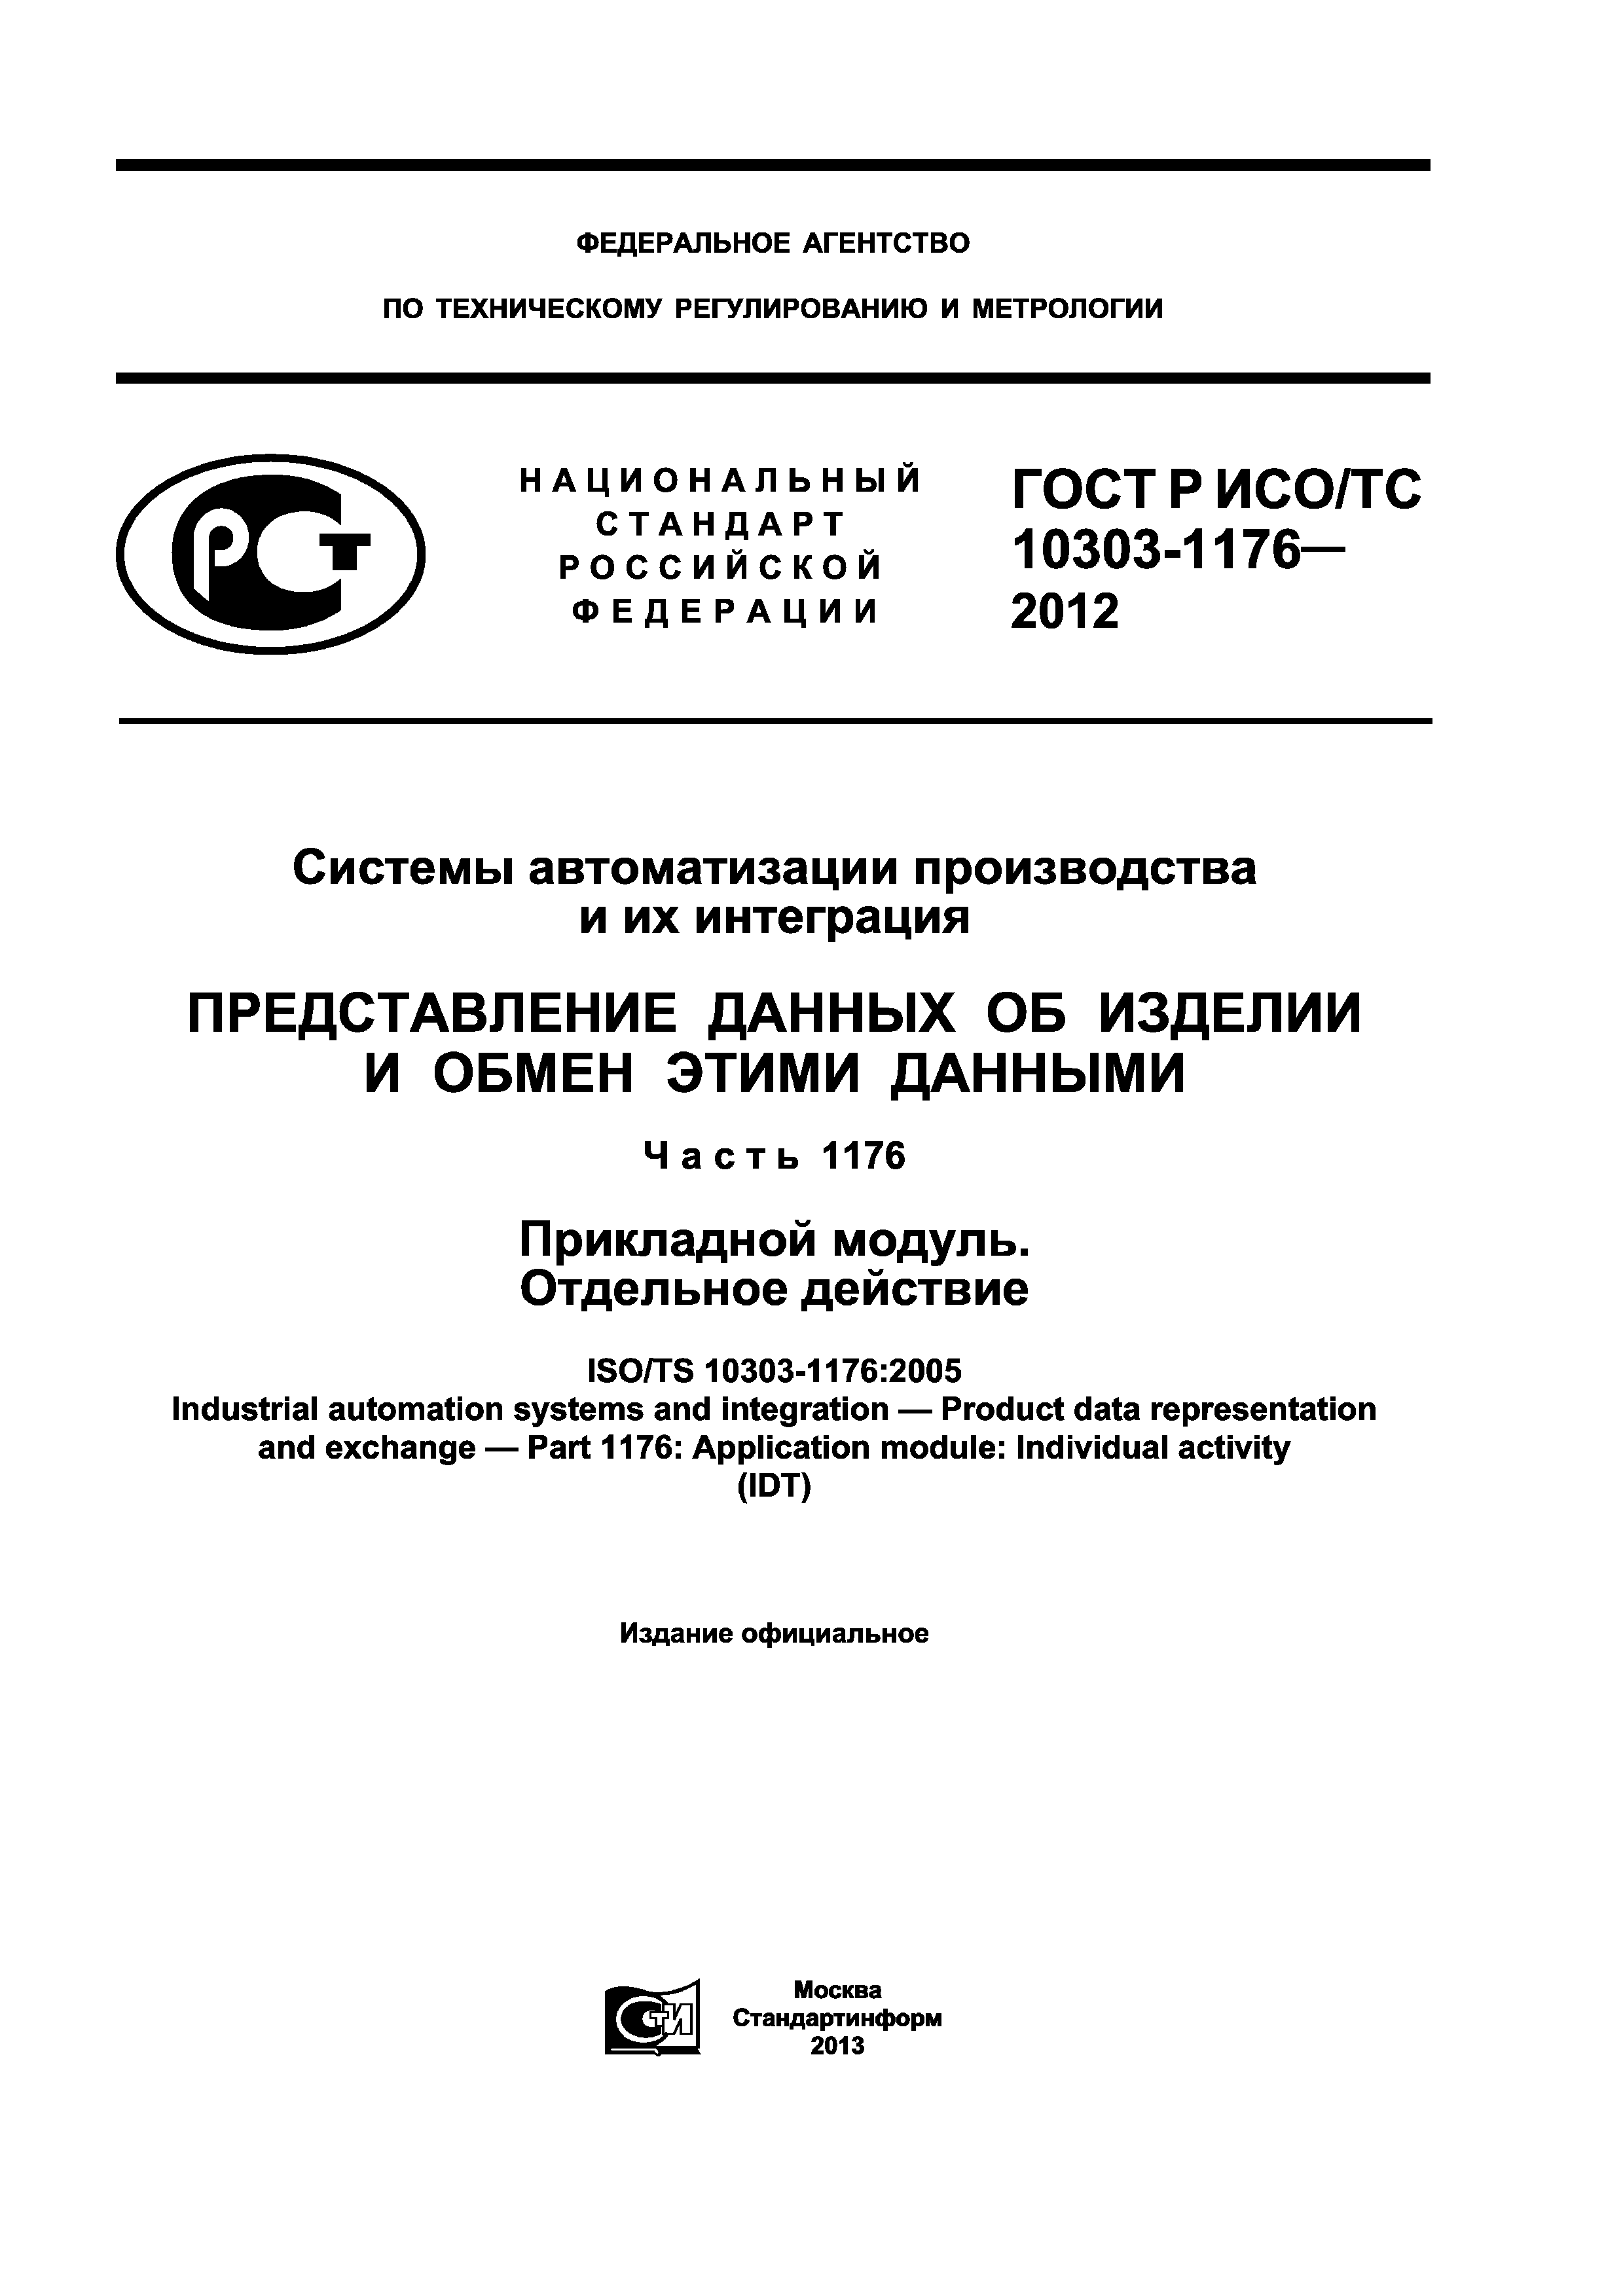 ГОСТ Р ИСО/ТС 10303-1176-2012